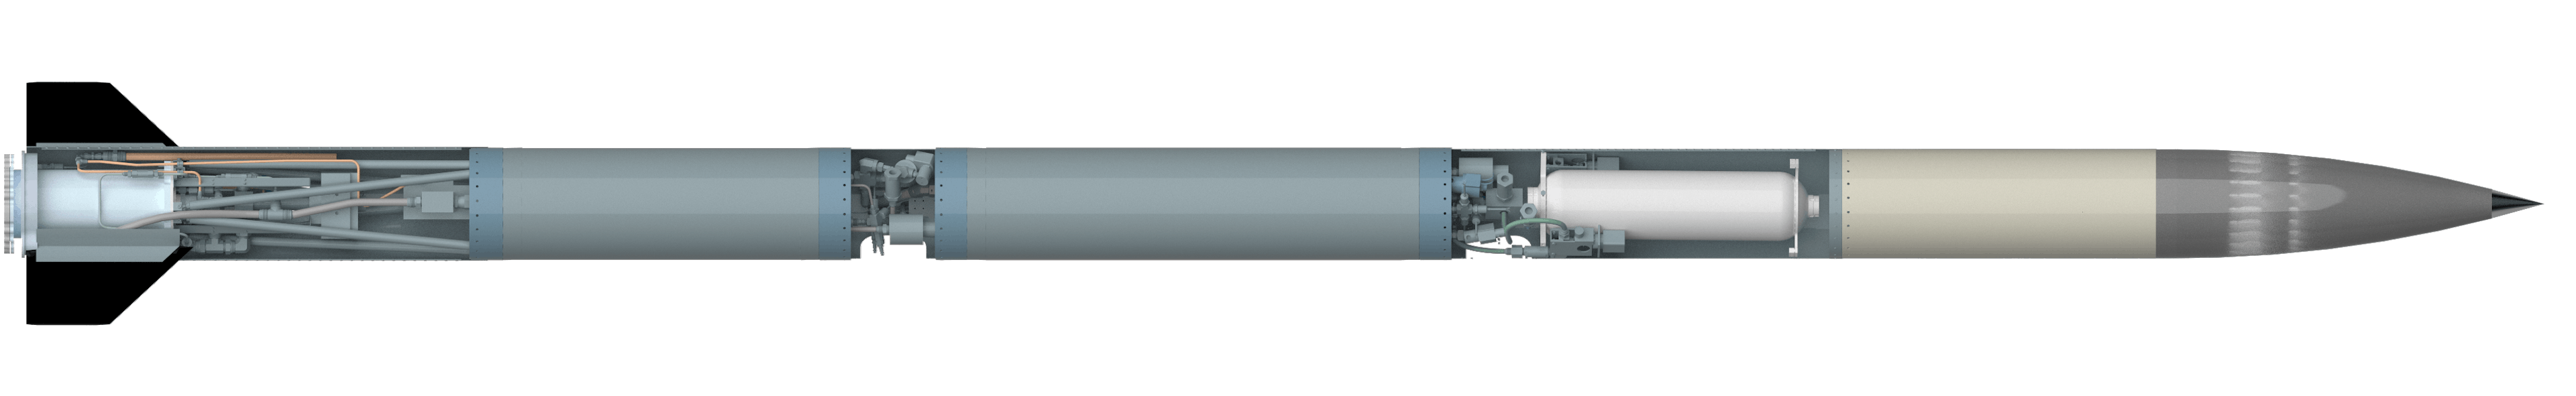 克莱门汀是 MASA 最新的超音速探空火箭